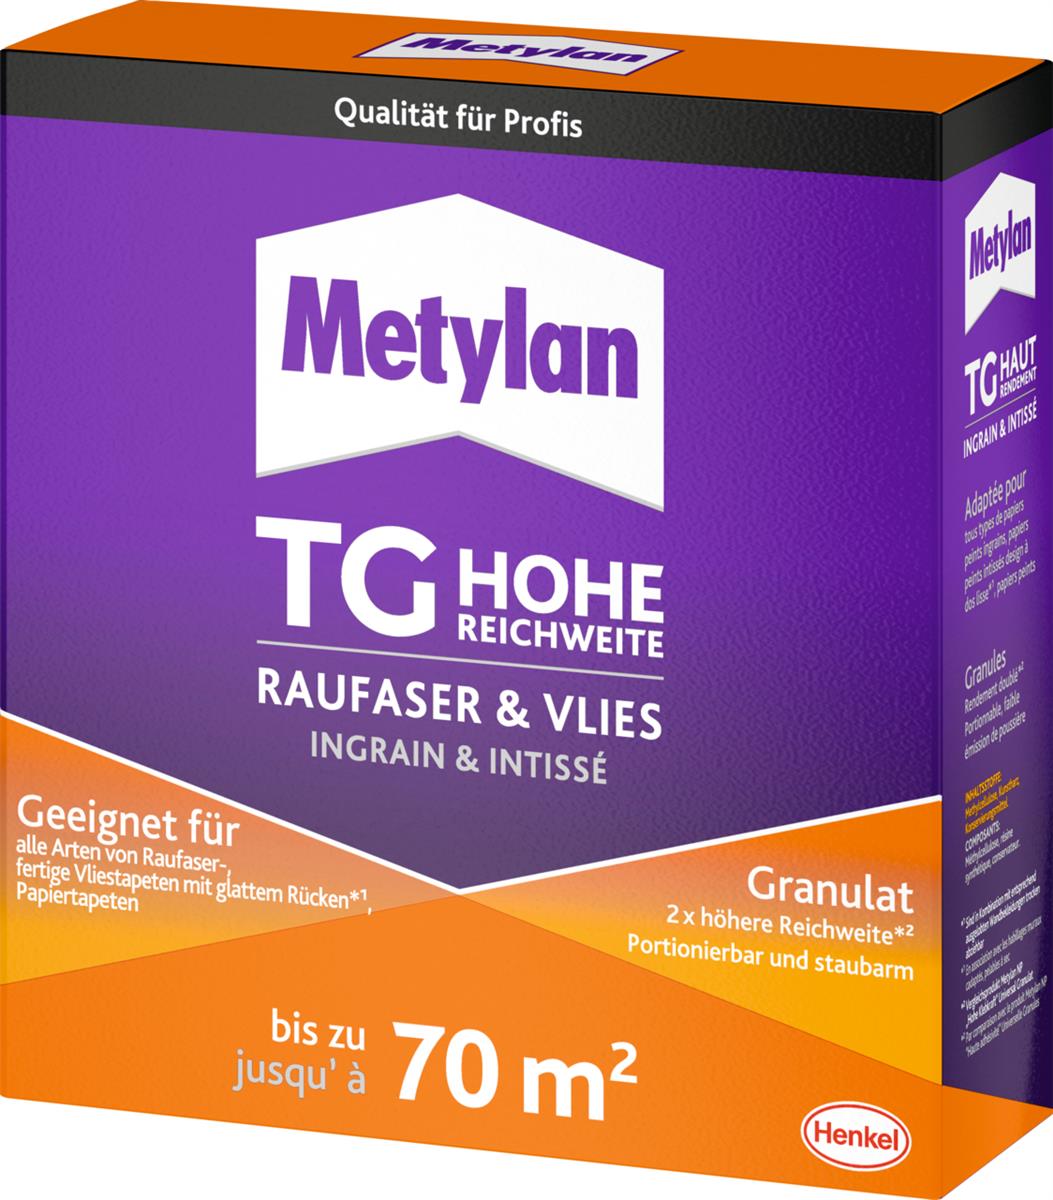 Metylan TG Raufaser & Vlies Ganulat Tapetenkleister - 500 g